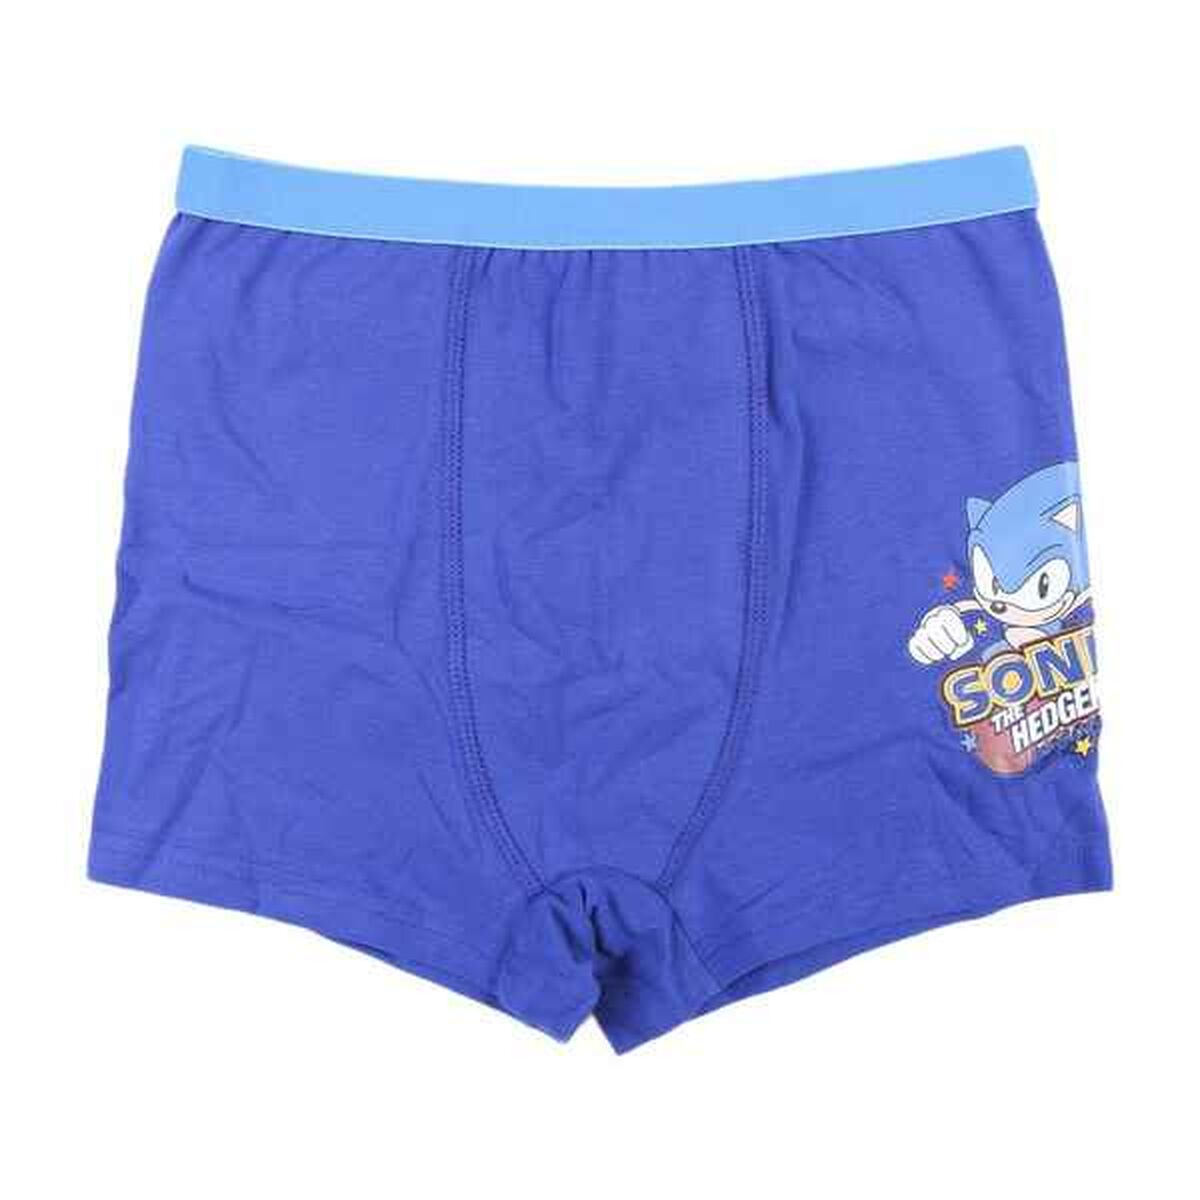 Confezione di Abbigliamento Intimo per Bambini Sonic Multicolore (4 pcs)